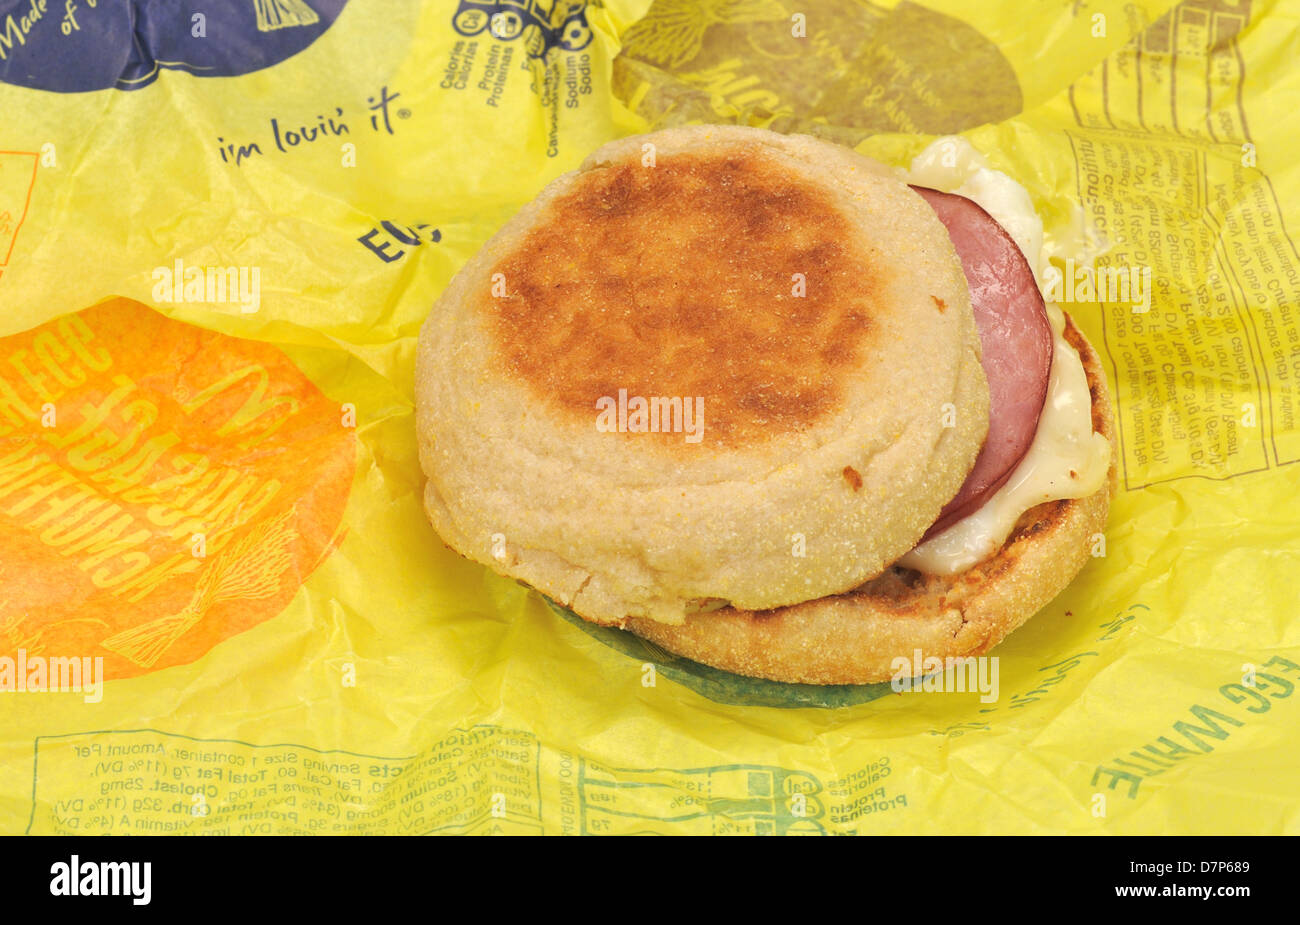 McDonald's bianco d'uovo McMuffin Delight colazione panino con pancetta canadese sull involucro di carta. Stati Uniti d'America Foto Stock